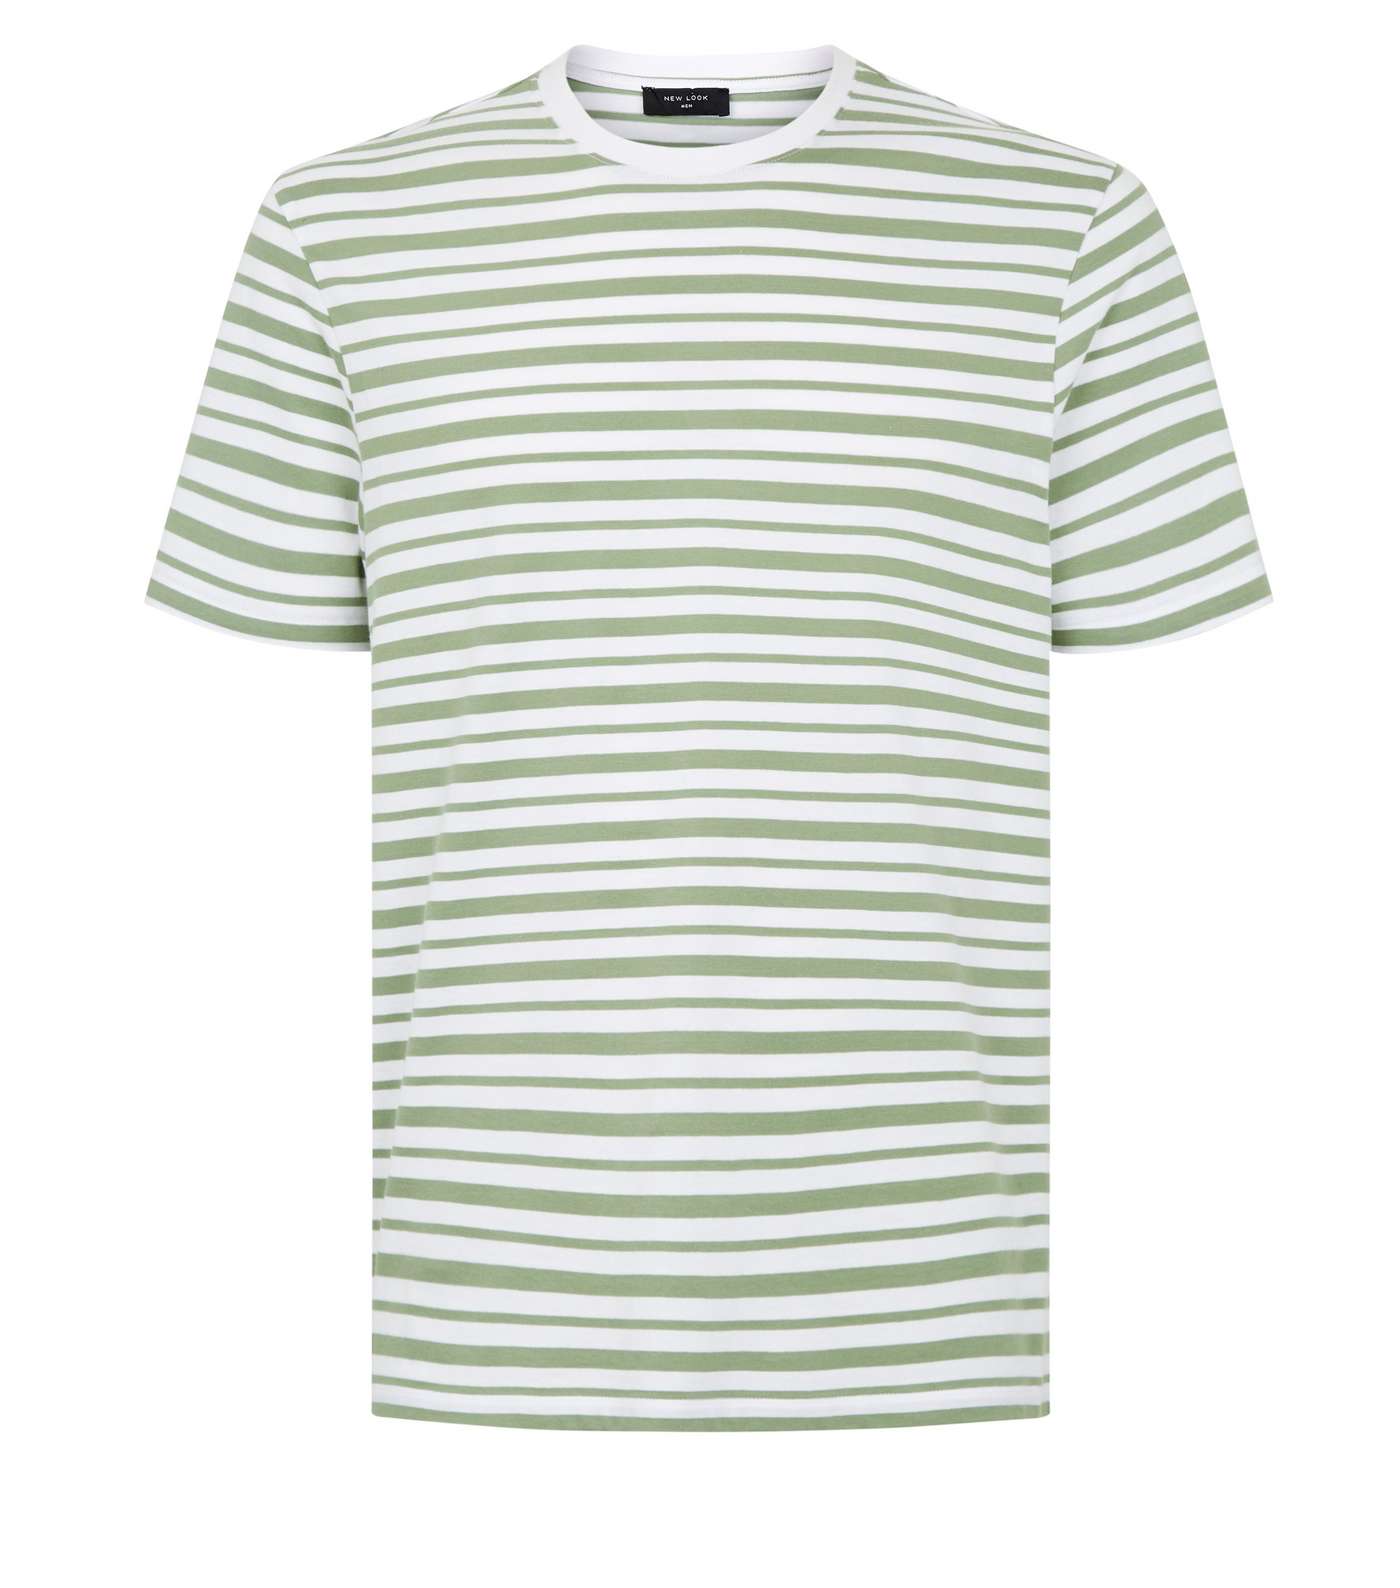 Olive Stripe Short Sleeve T-Shirt Image 4